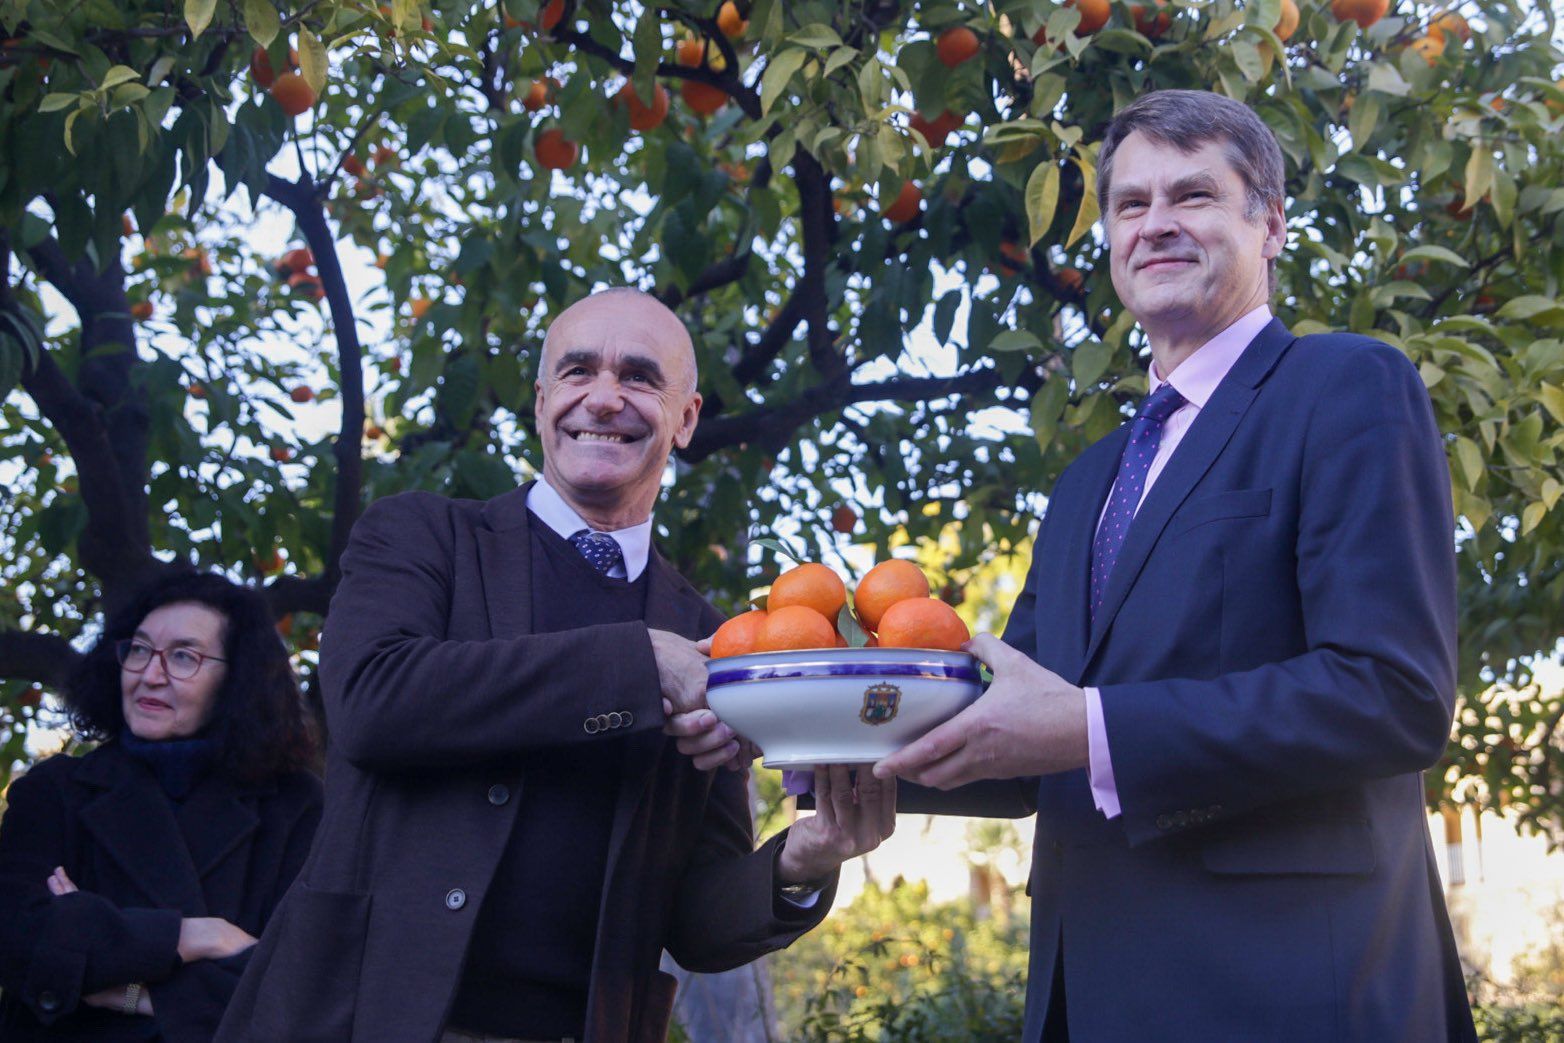 El alcalde de Sevilla, Antonio Muñoz, ha hecho entrega al embajador de Reino Unido en España, Hugh Elliott, de 30 kilos de naranja.